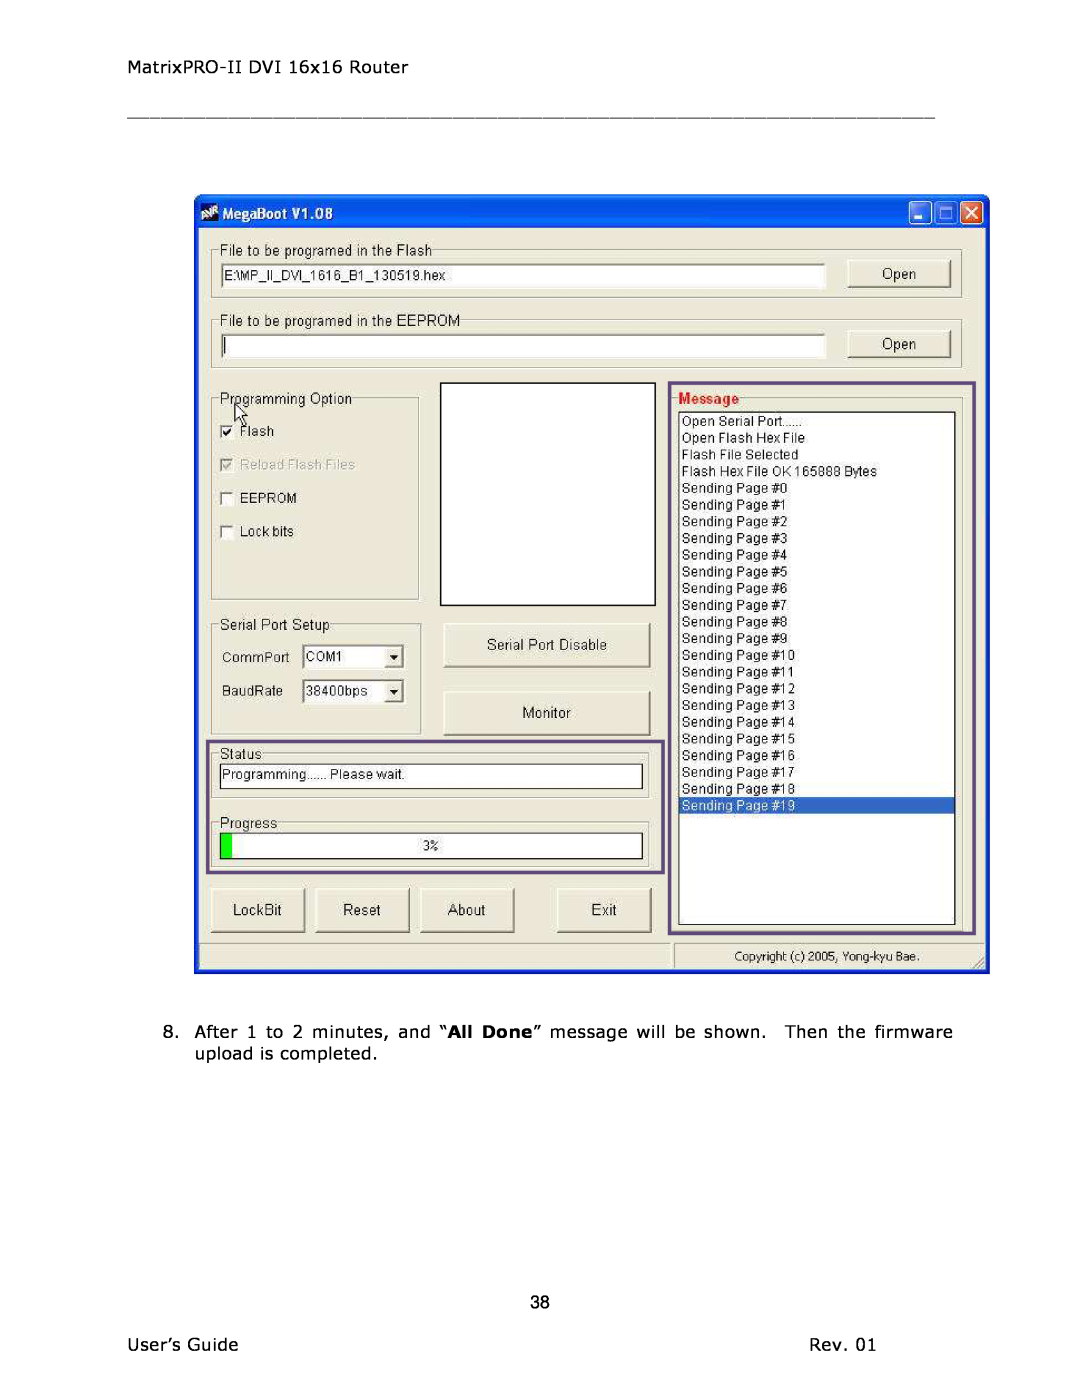 Barco 26-1302001-00 manual MatrixPRO-II DVI 16x16 Router, User’s Guide 